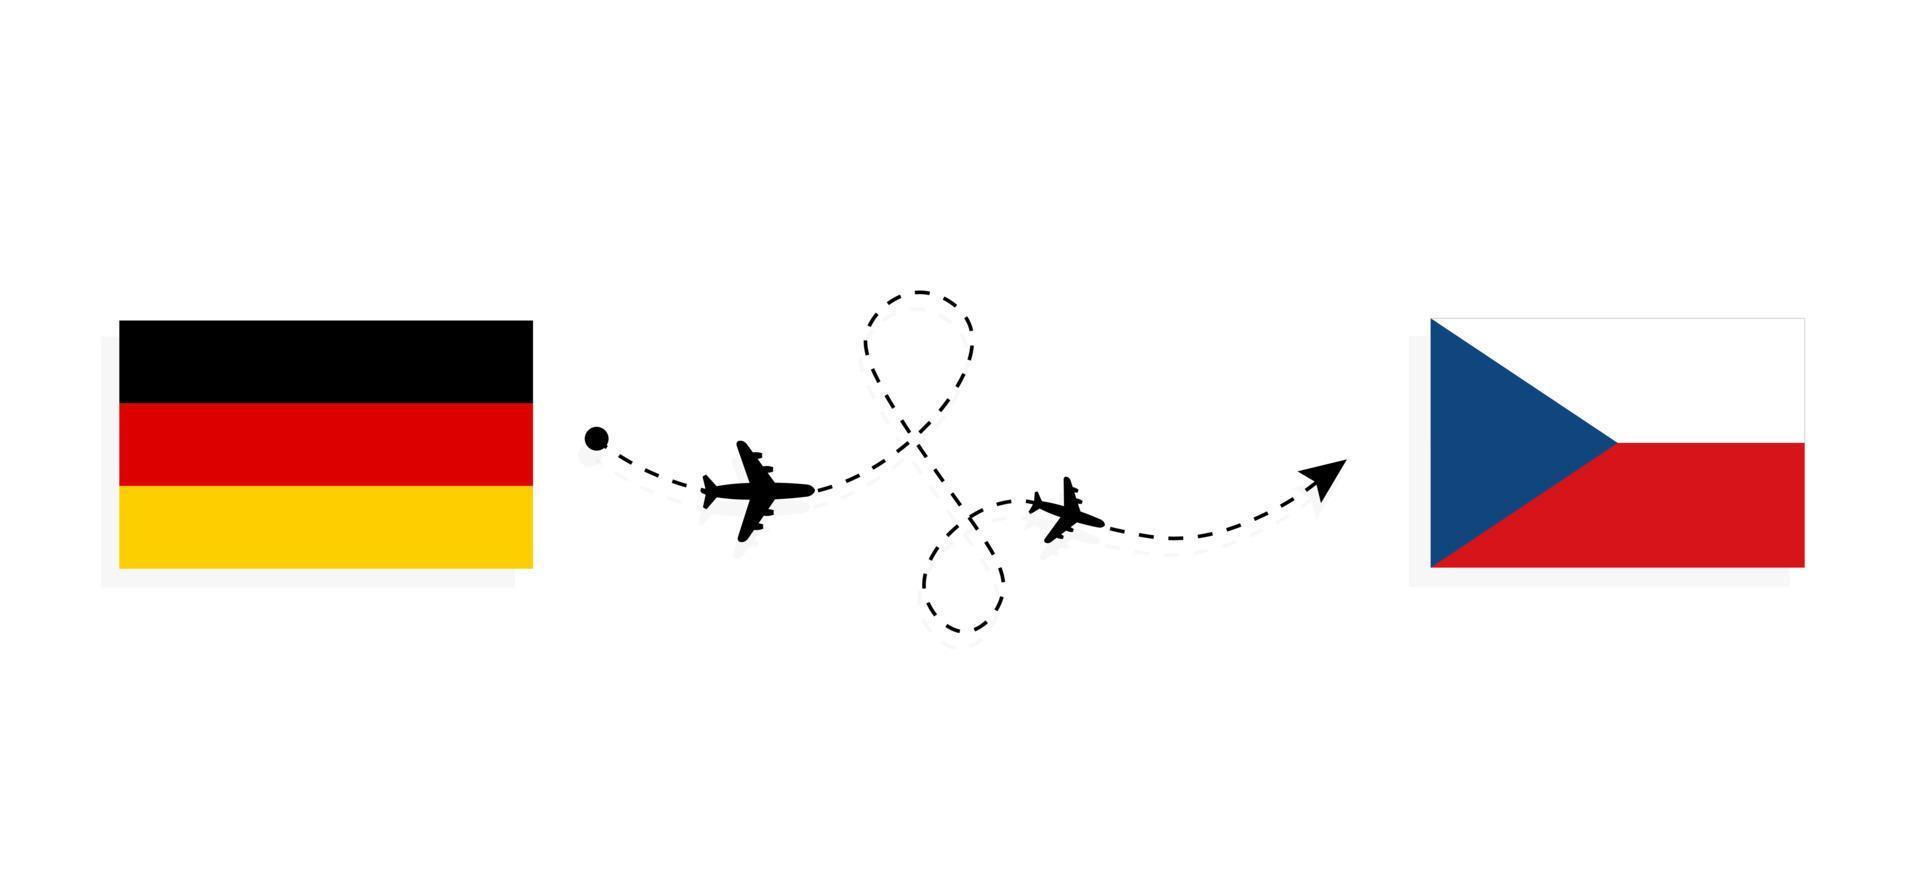 flyg och resor från Tyskland till Tjeckien med resekoncept för passagerarflygplan vektor